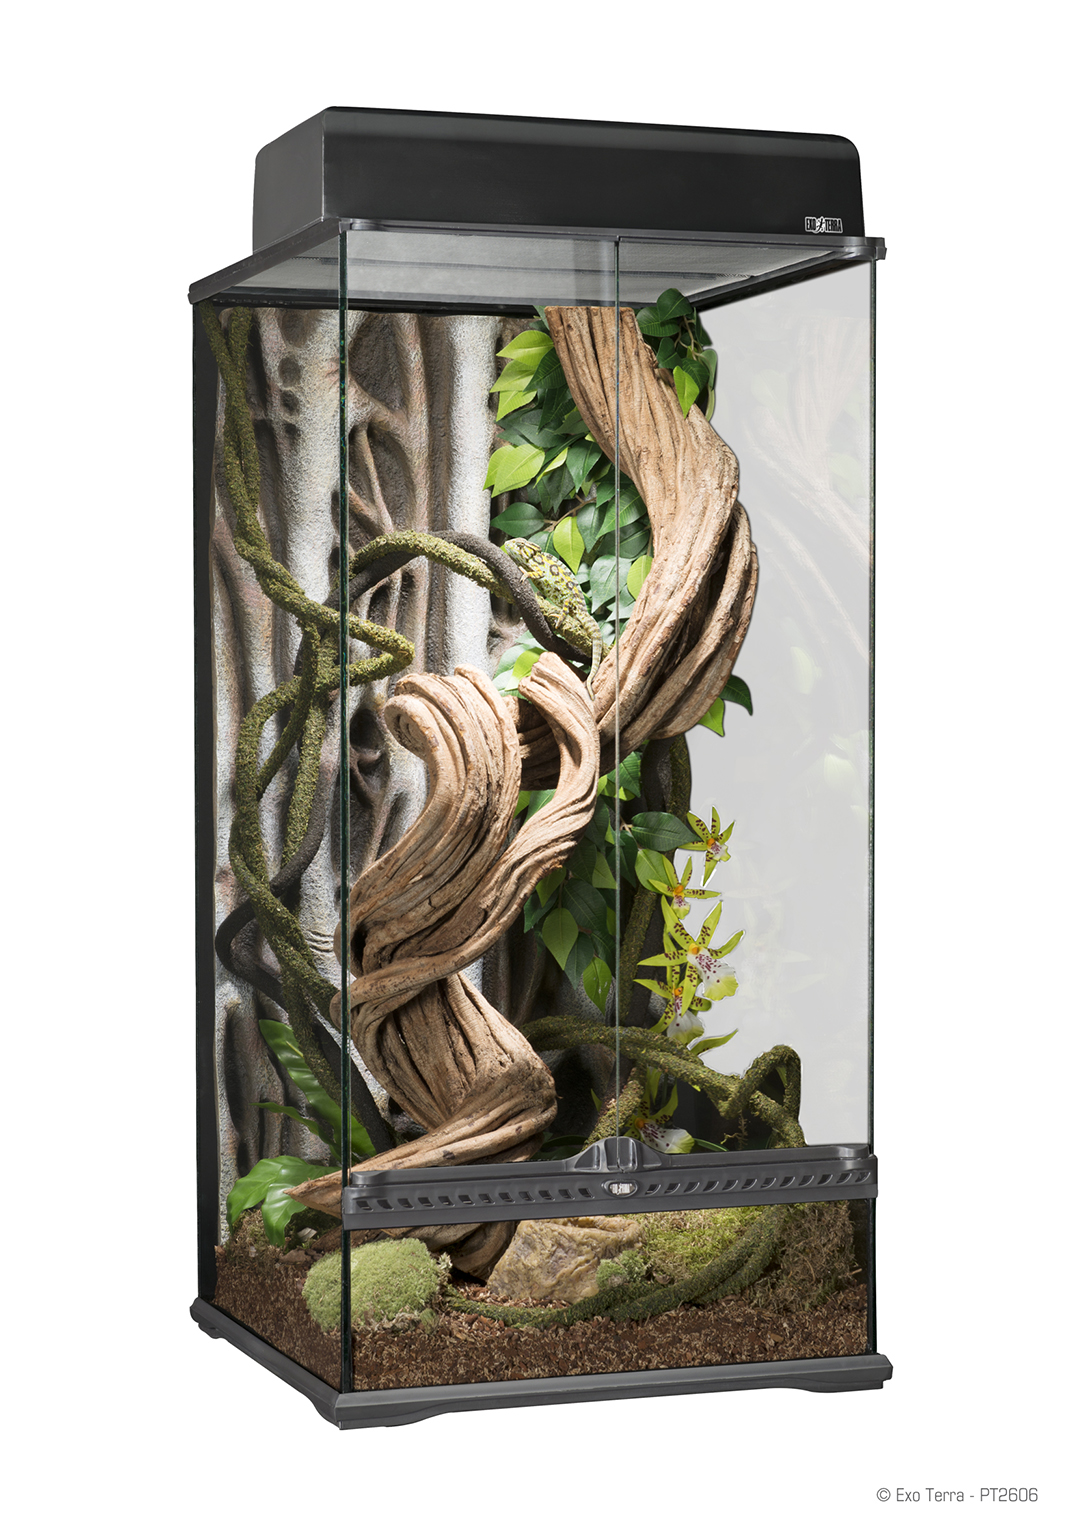 Ongrijpbaar Buiten verslag doen van Exo Terra Rainforest Terrarium Paludarium - 45x45x90cm -  Reptielenspullenkopen.nl